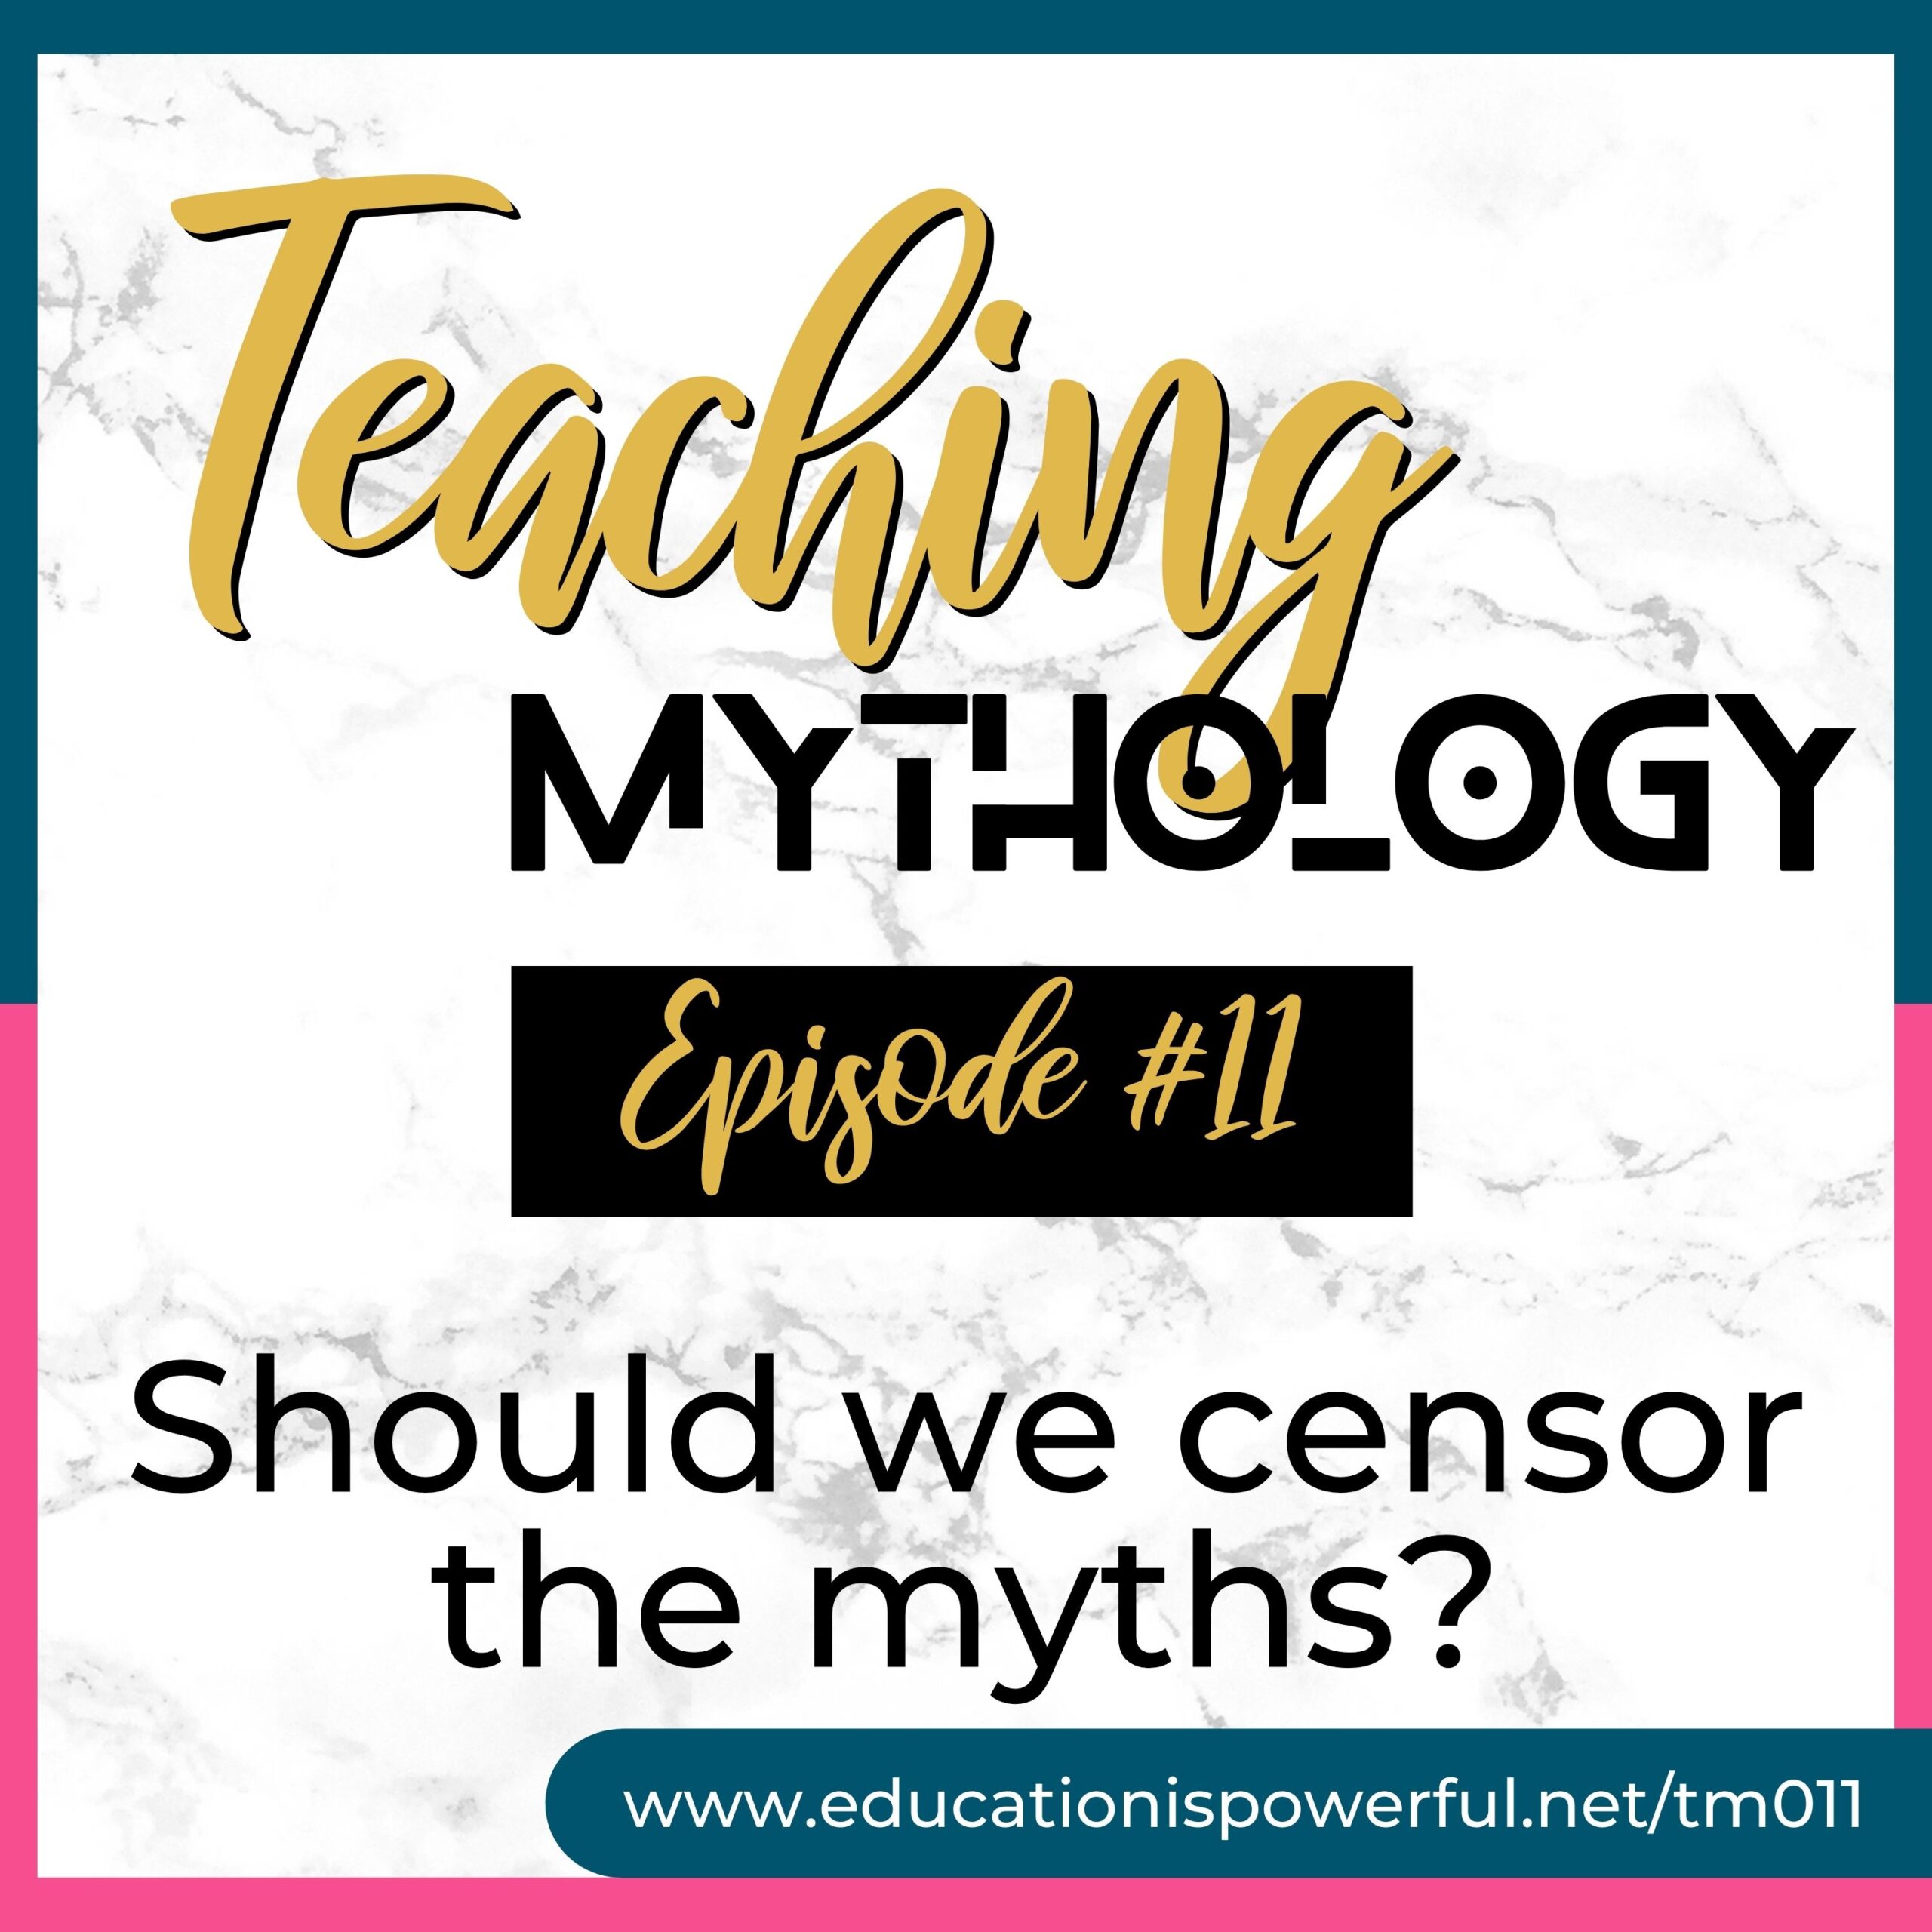 Teaching Mythology Podcast Episode 011: Should we censor the myths?